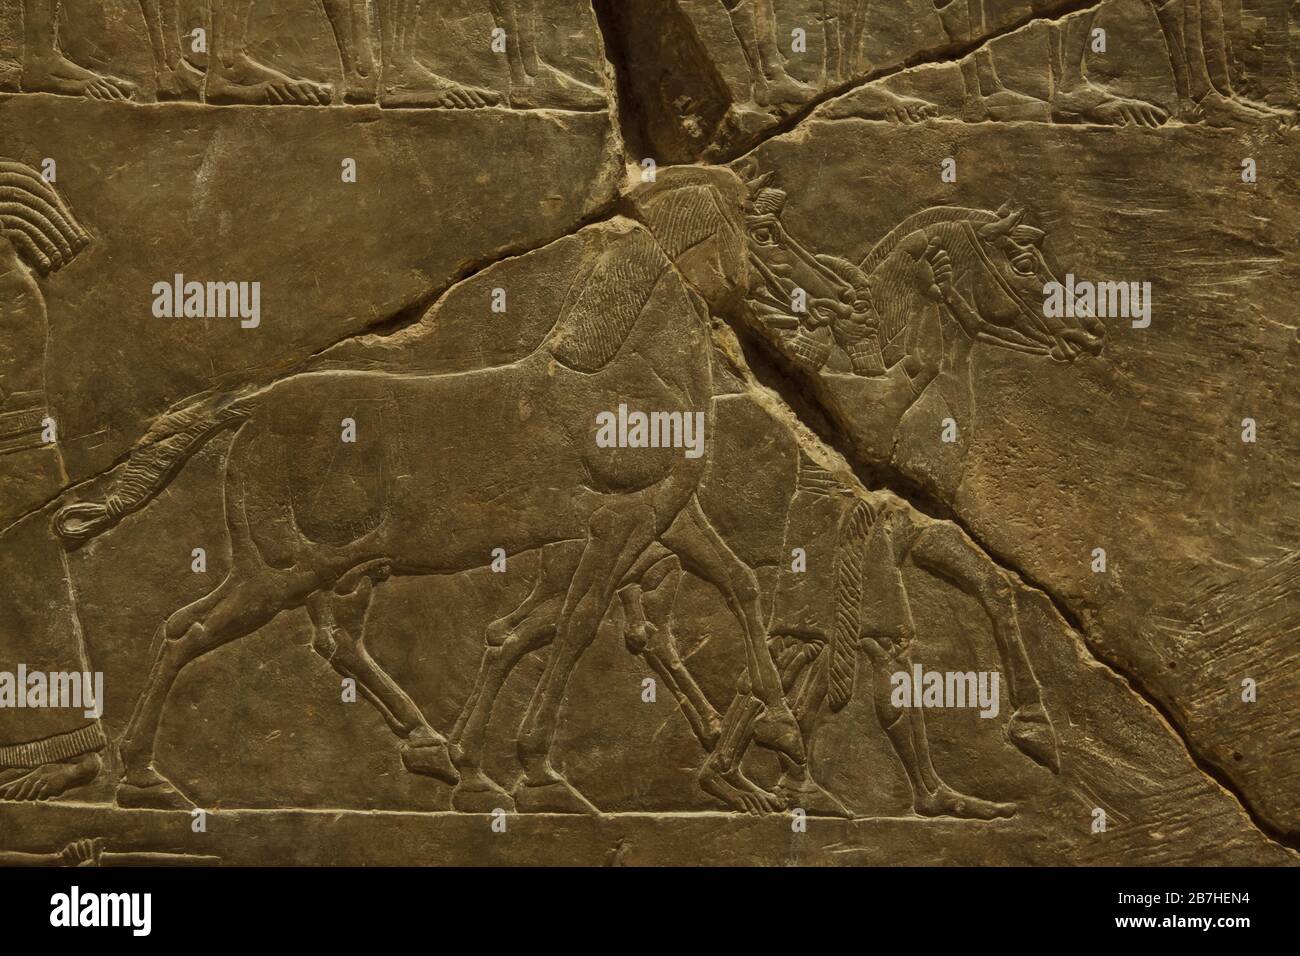 Assyrische Pferde während der Kampagne des Königs Ashurbanipal gegen Elam, die im Assyrerrelief vom Palast des Königs Ashurbanipal in Ninive aus dem Jahr 645 v. Chr. im Louvre in Paris, Frankreich, ausgestellt wurden. Stockfoto